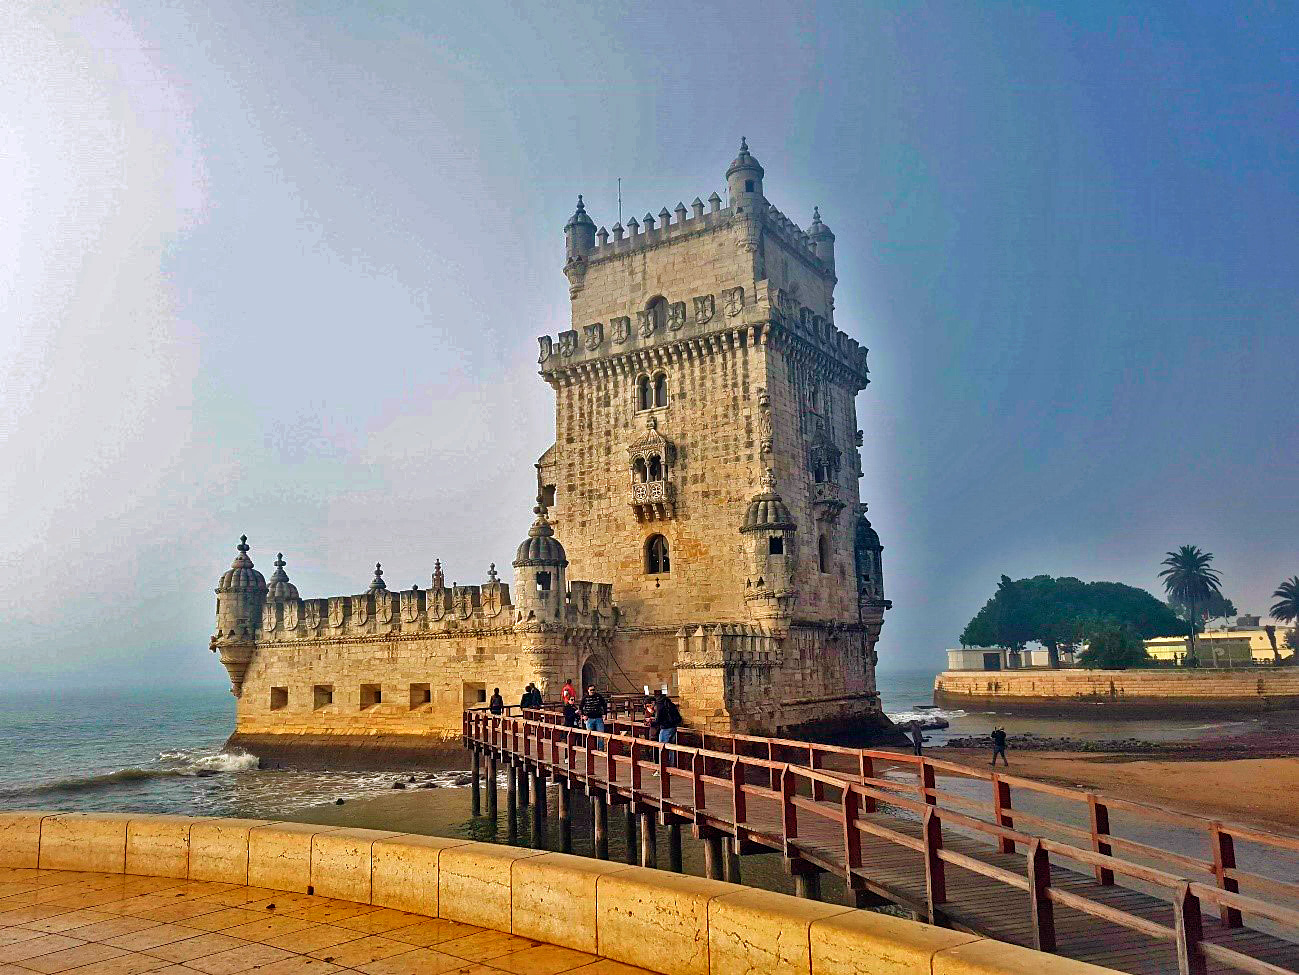 A visita a este monumento é imperdível, pois a Torre de Belém é um verdadeiro ícone da arquitetura do reinado de D. Manuel I, e da tradição medieval